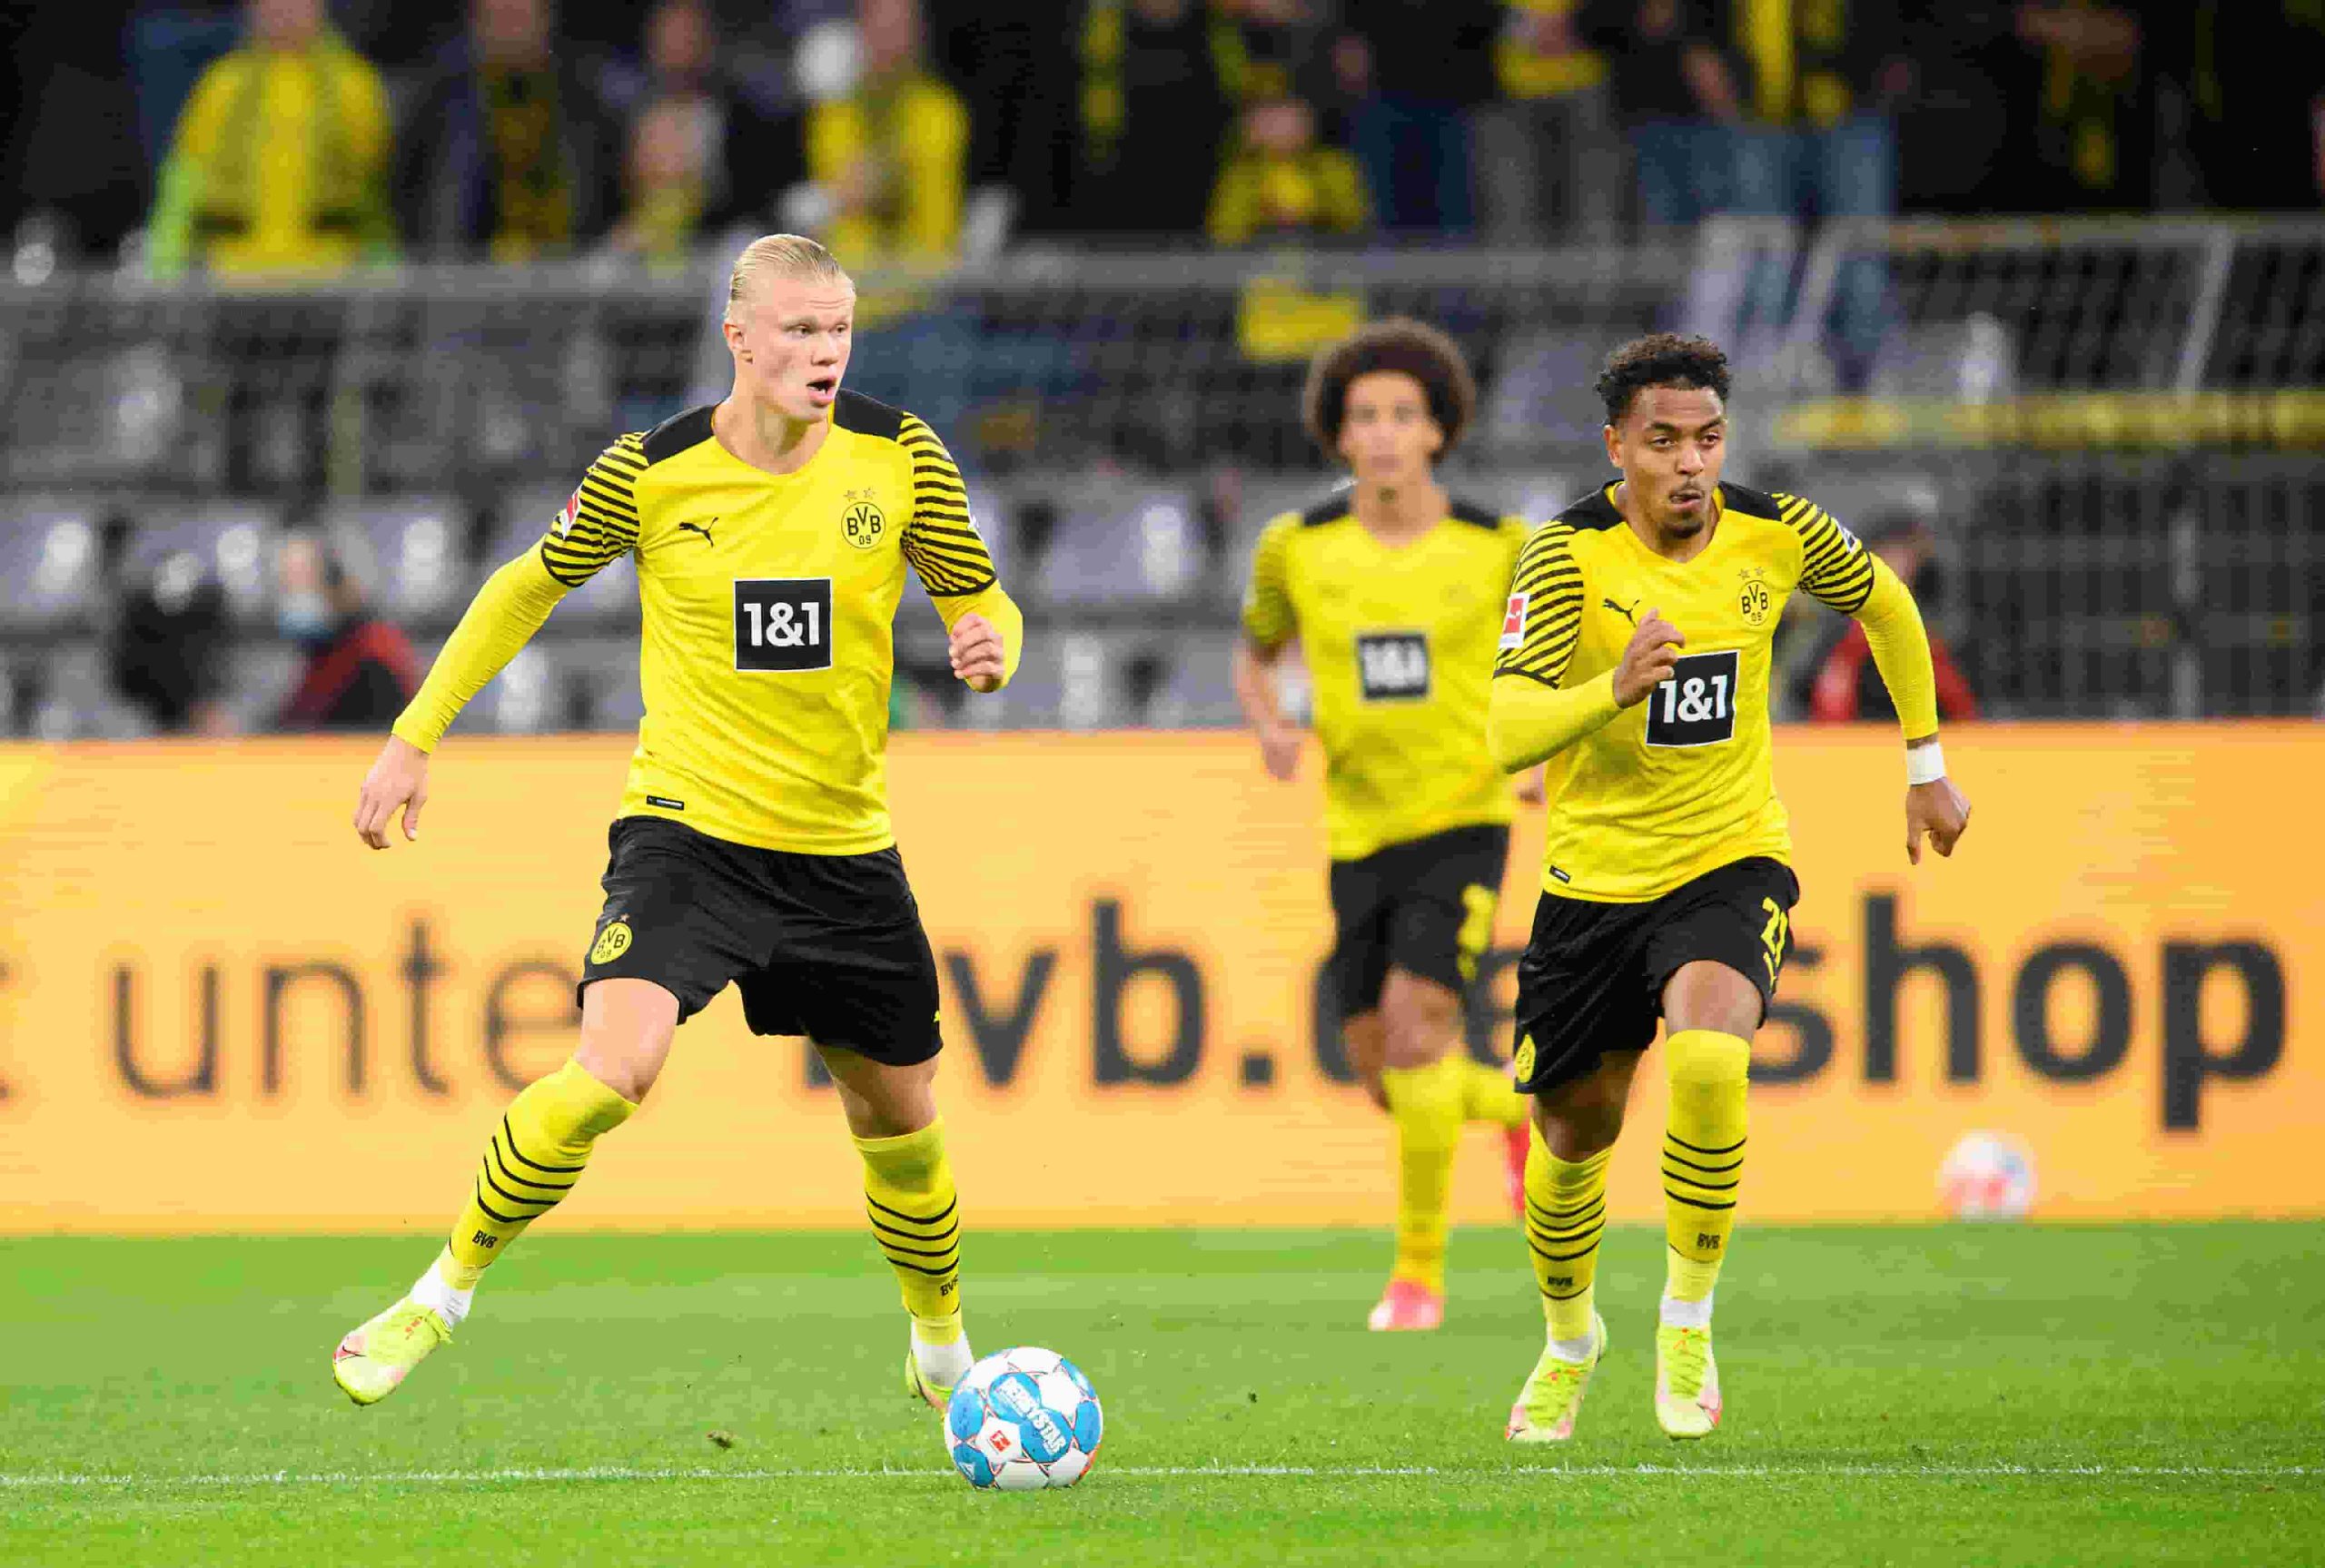 Borussia Dortmund vs Union Berlin Live Stream and Preview